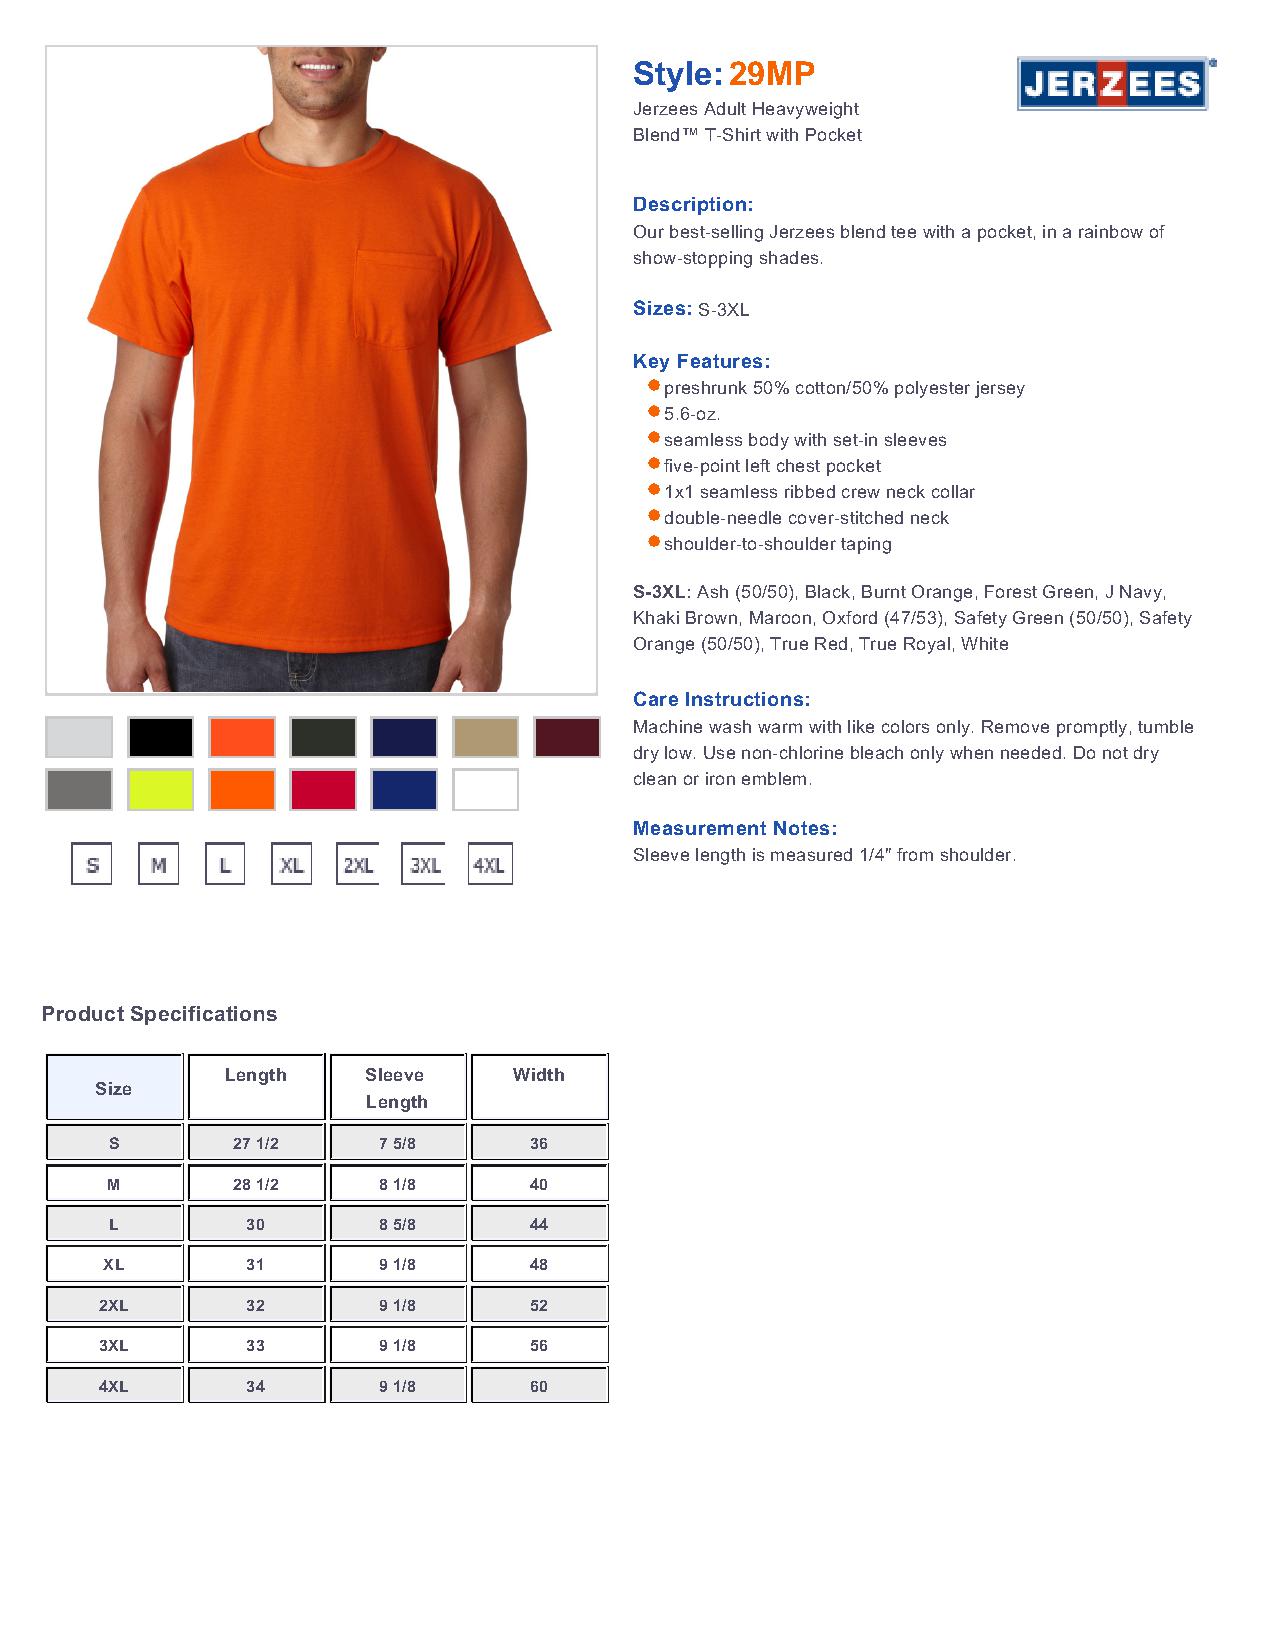 Jerzees 29MP Heavyweight Blend Short-Sleeve Pocket T-Shirt $7.15 - T-Shirts